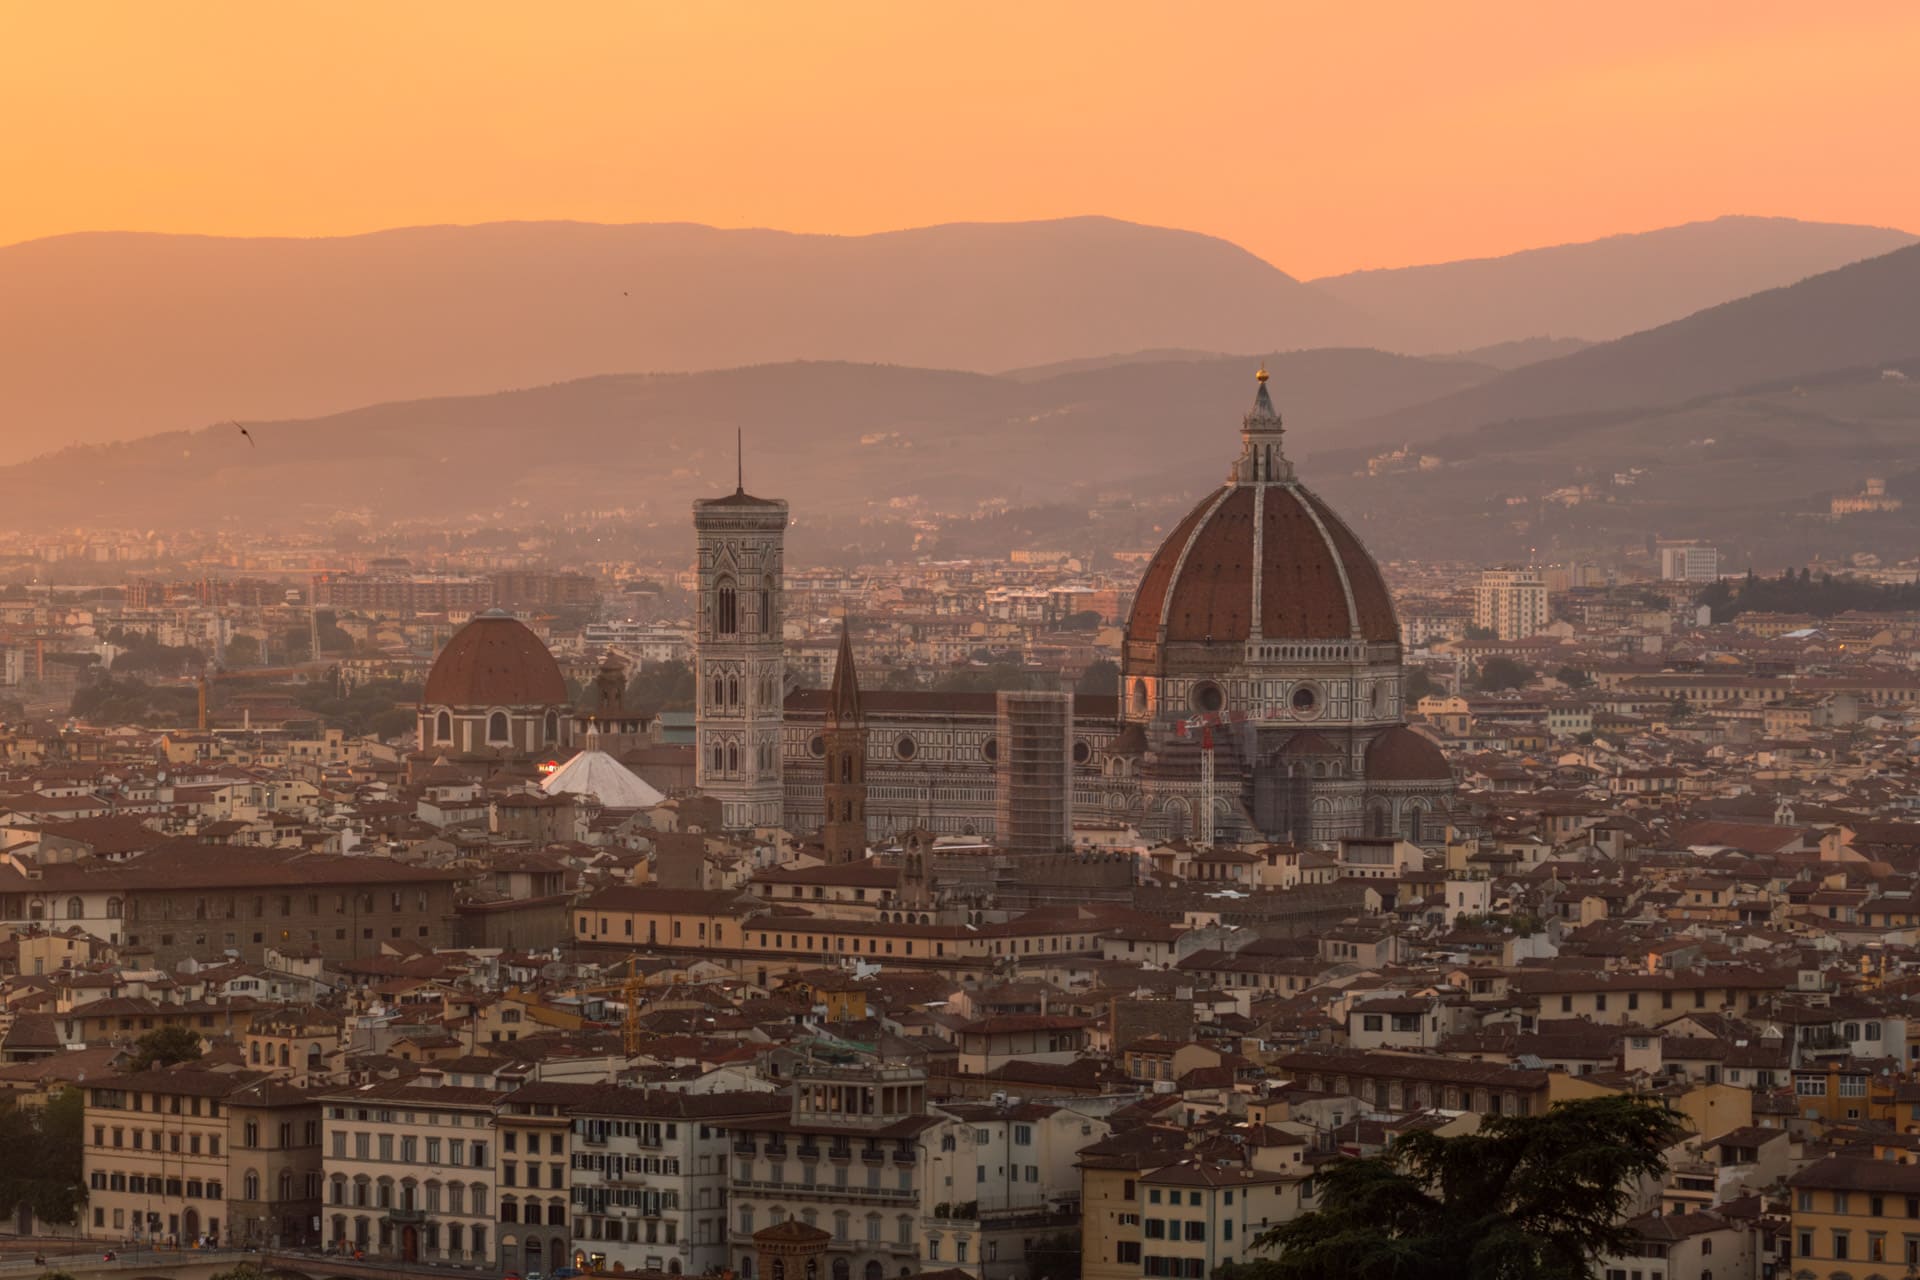 Firenze rejseguide: 16 bedste oplevelser & seværdigheder